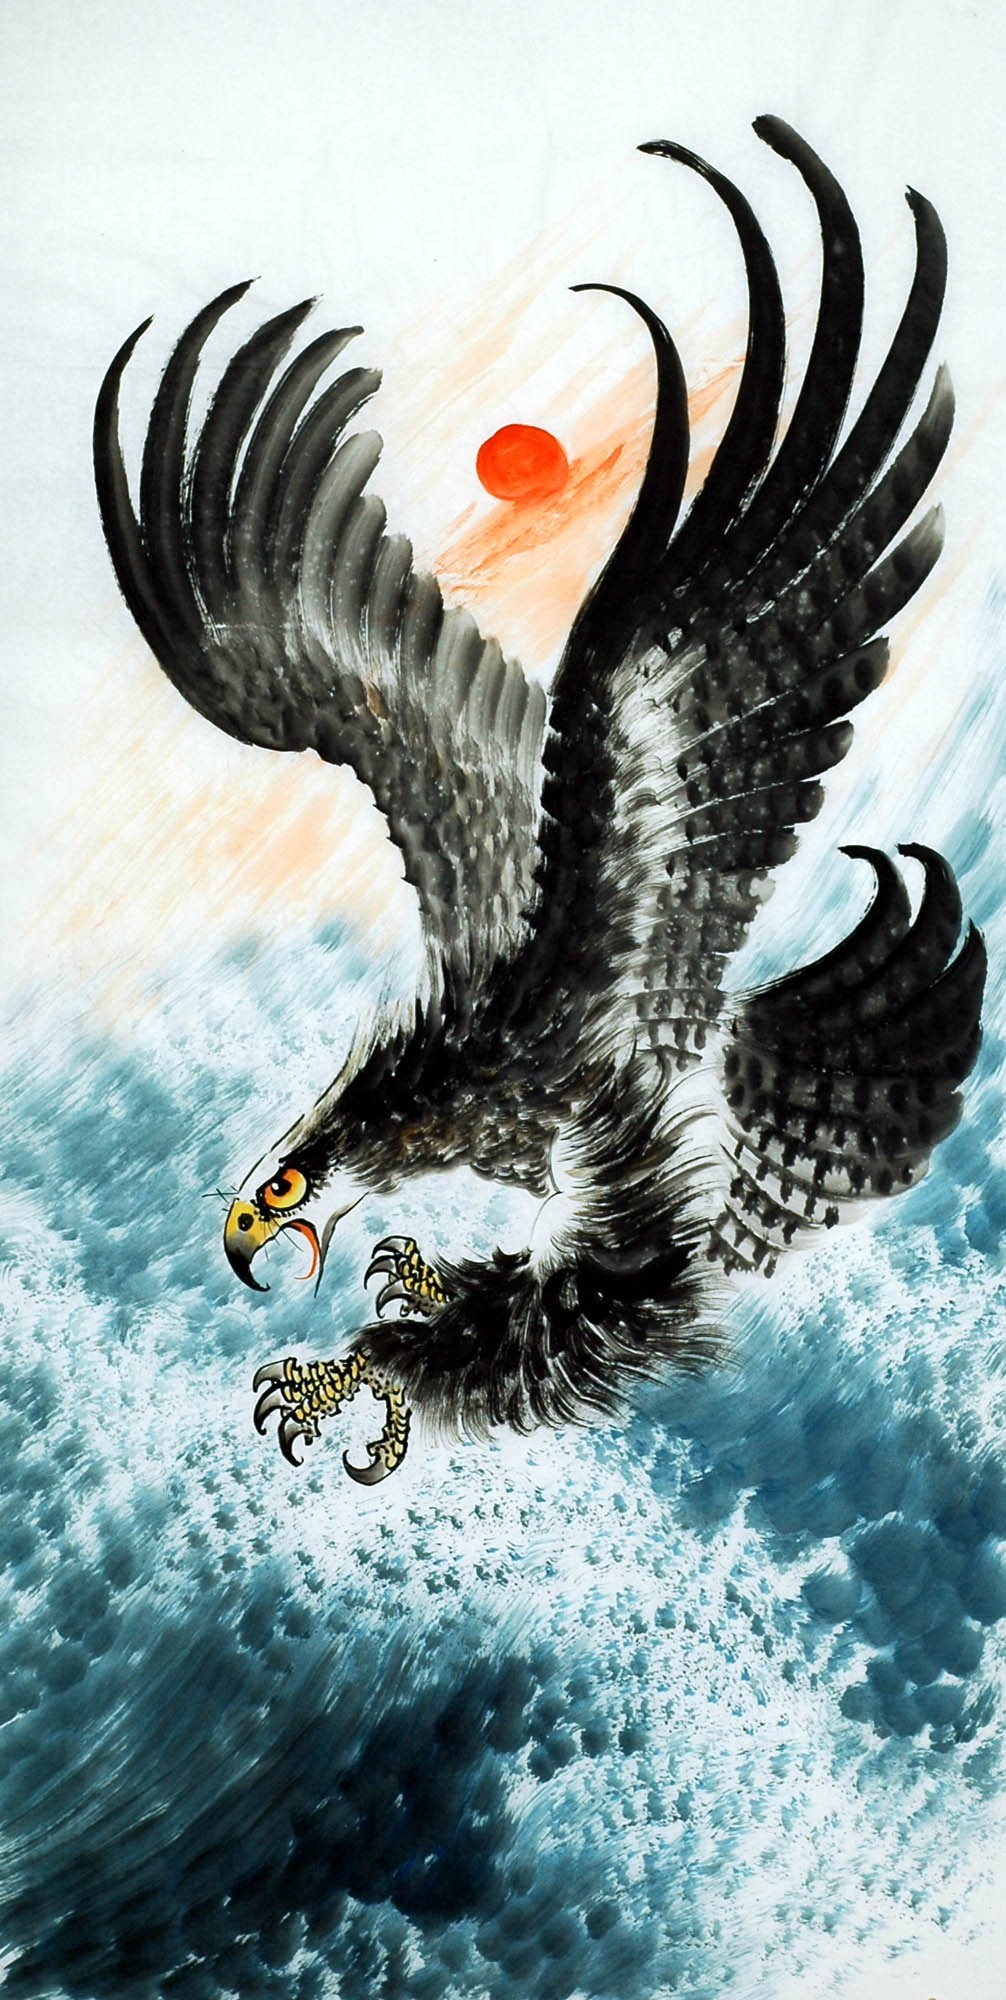 Chinese Eagle Painting - CNAG009719